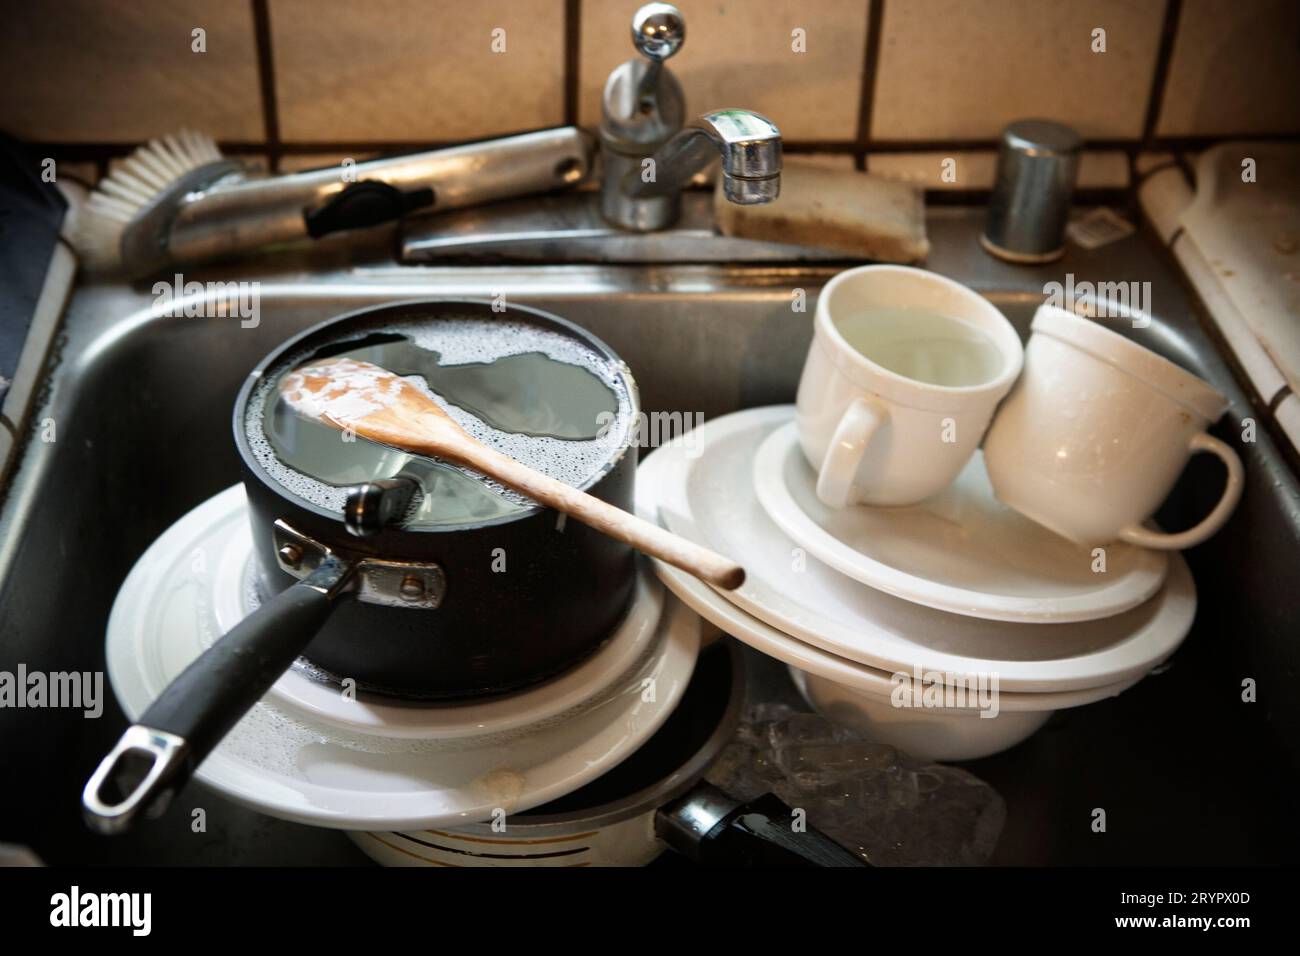 Un évier rempli de vaisselle sale. Banque D'Images